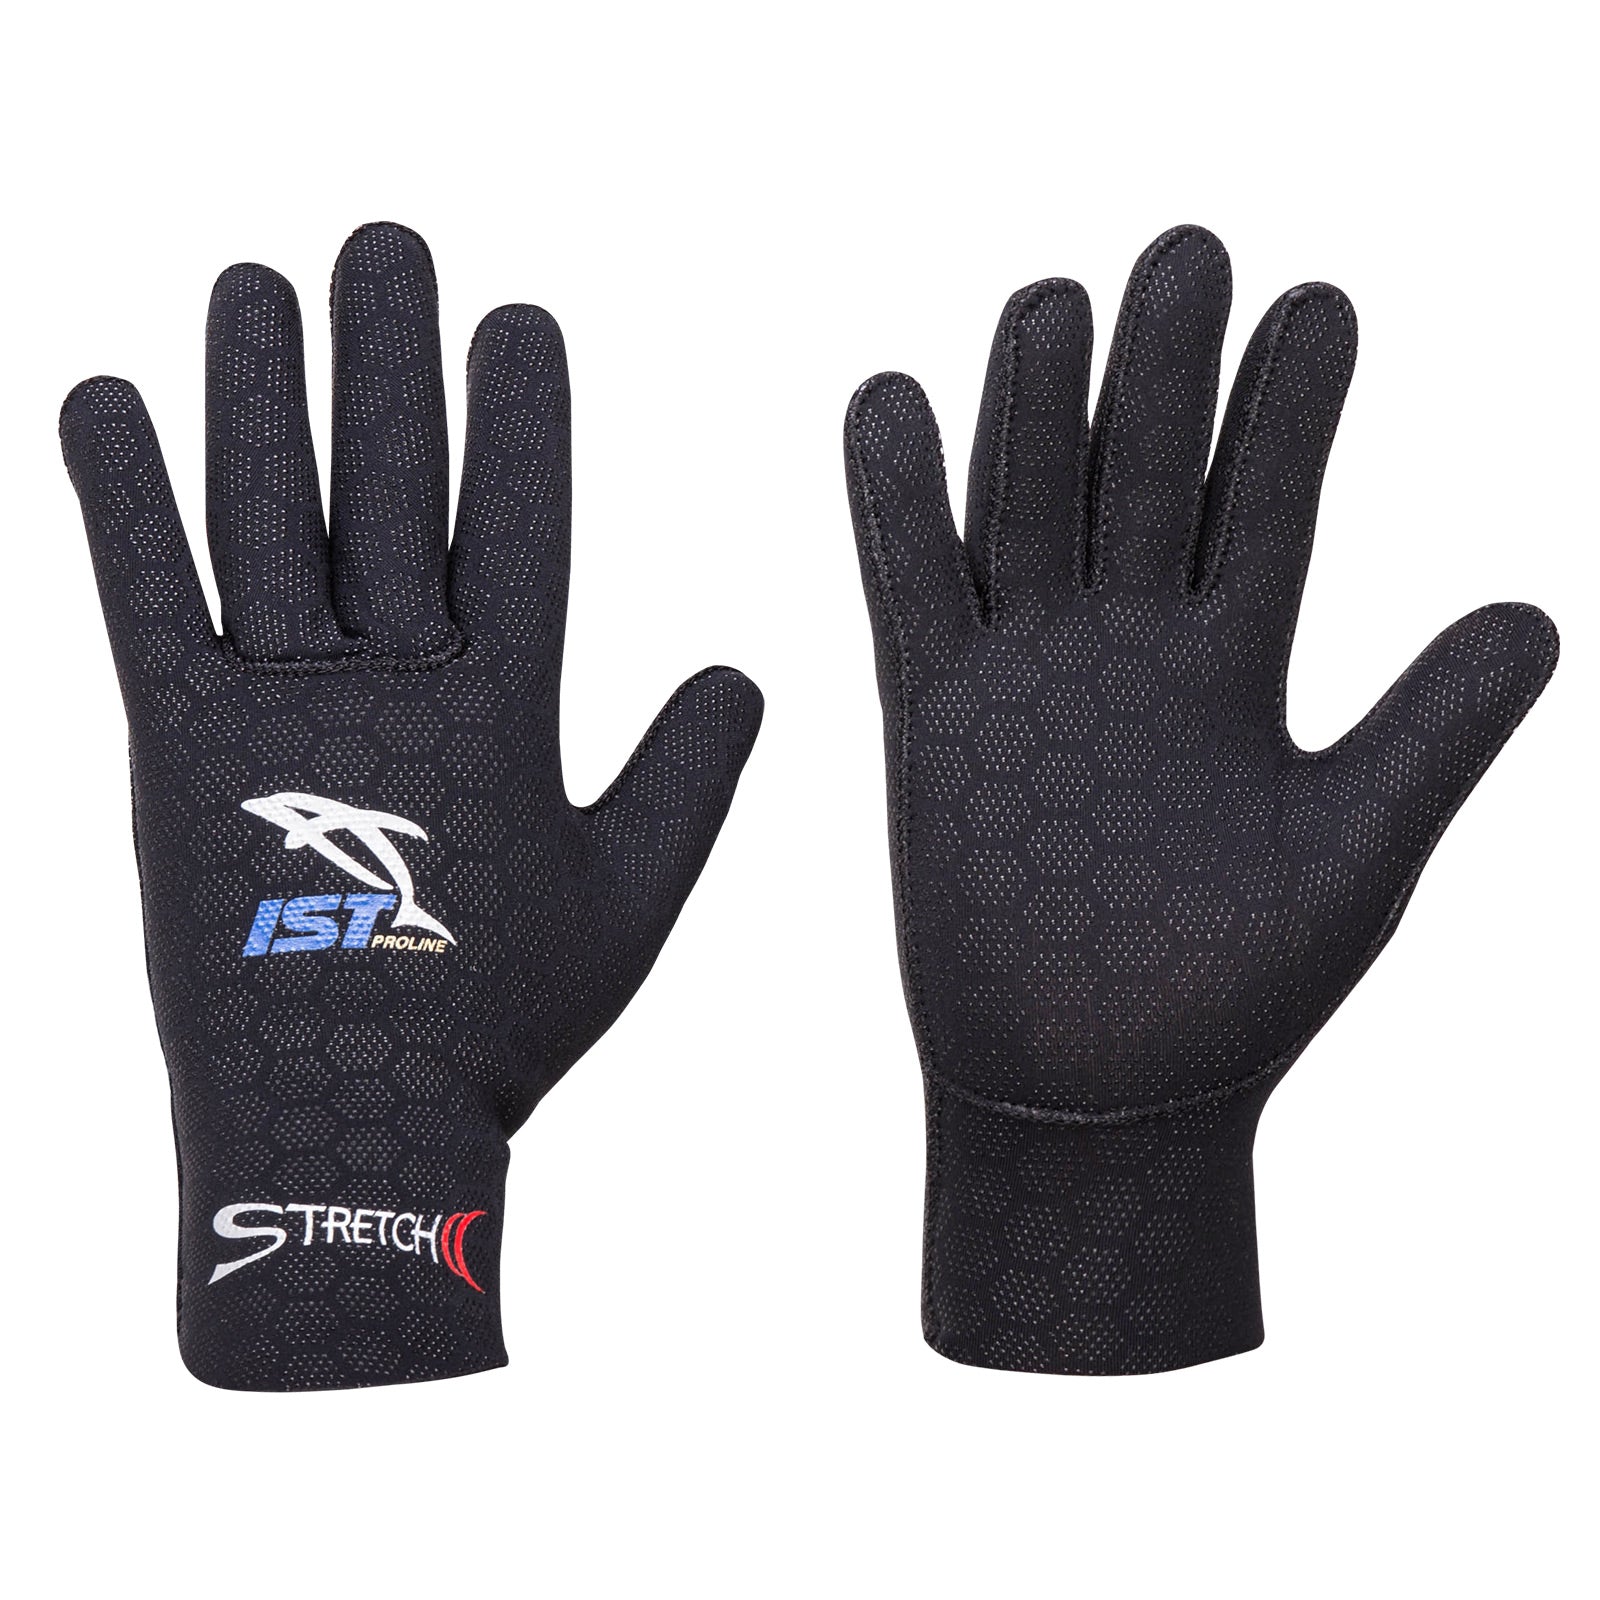 Super Stretch Gloves 2.5 mm